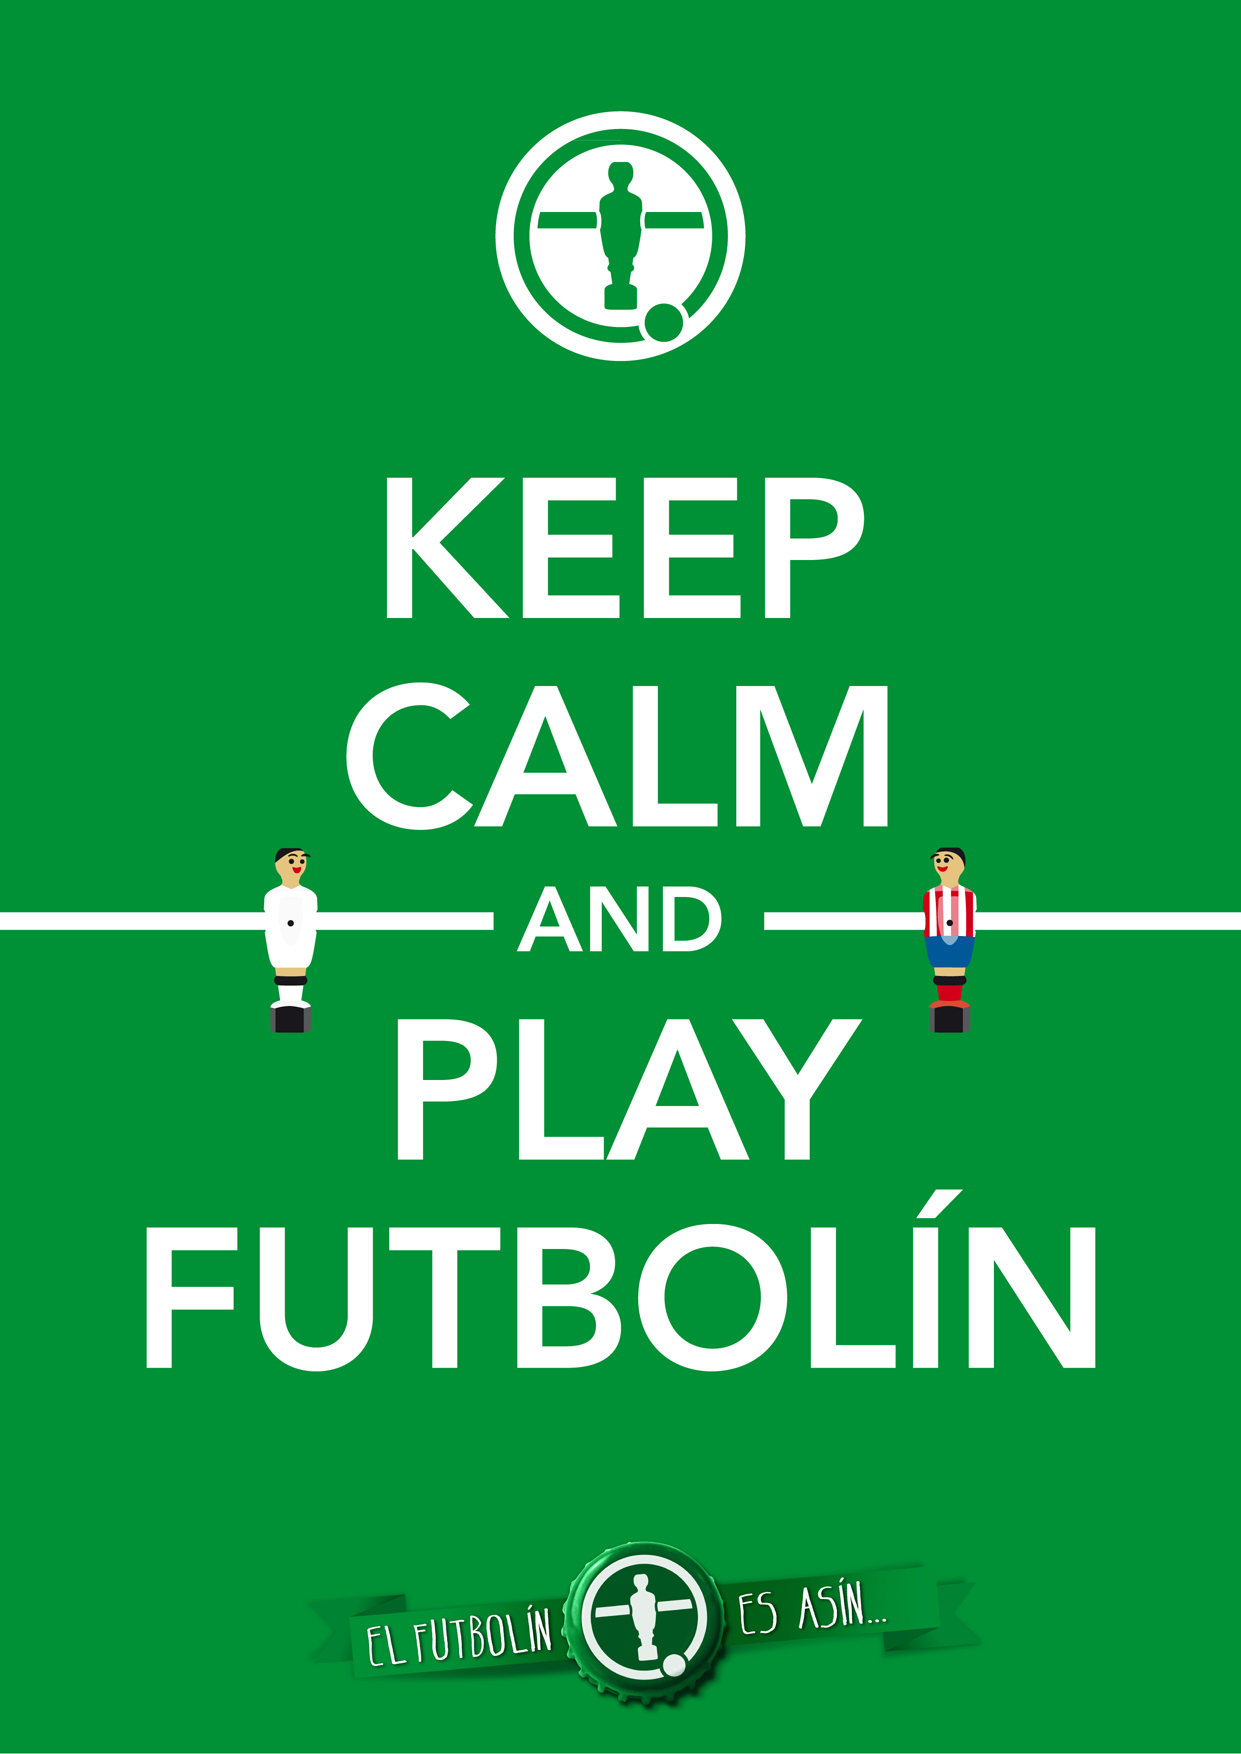 Keep calm and play futbolin